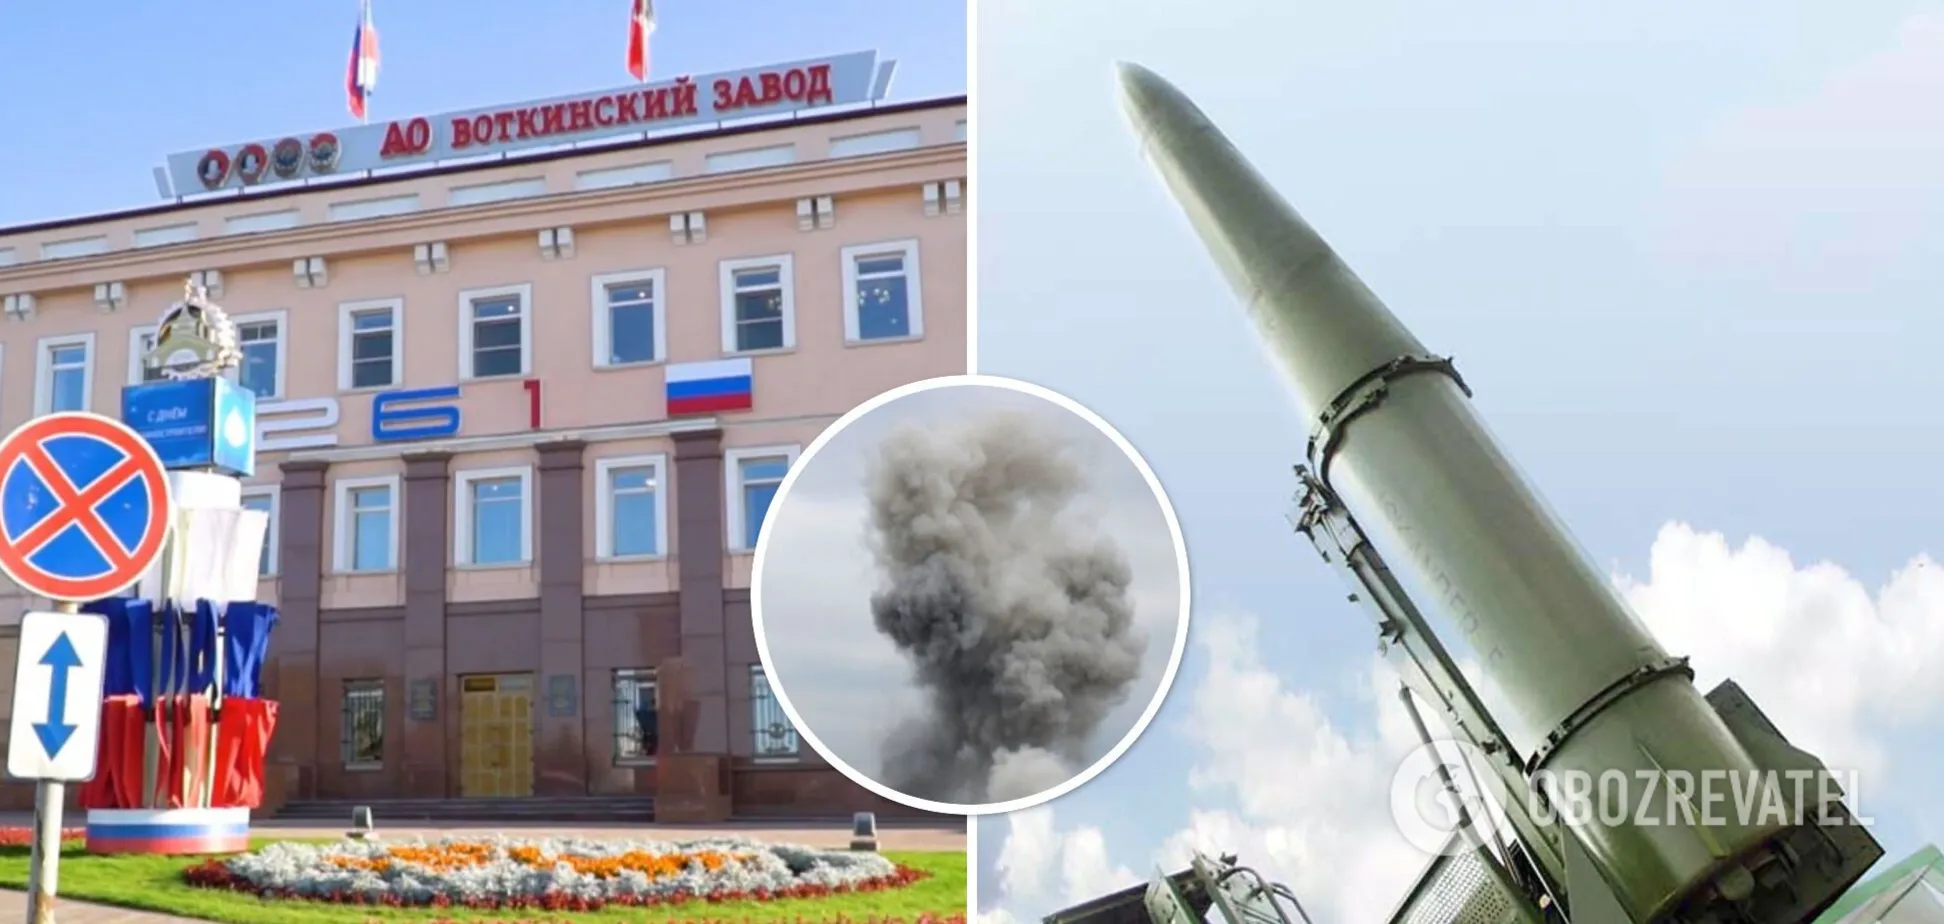 Експлозия избухна близо до Воткинския завод в Удмуртия